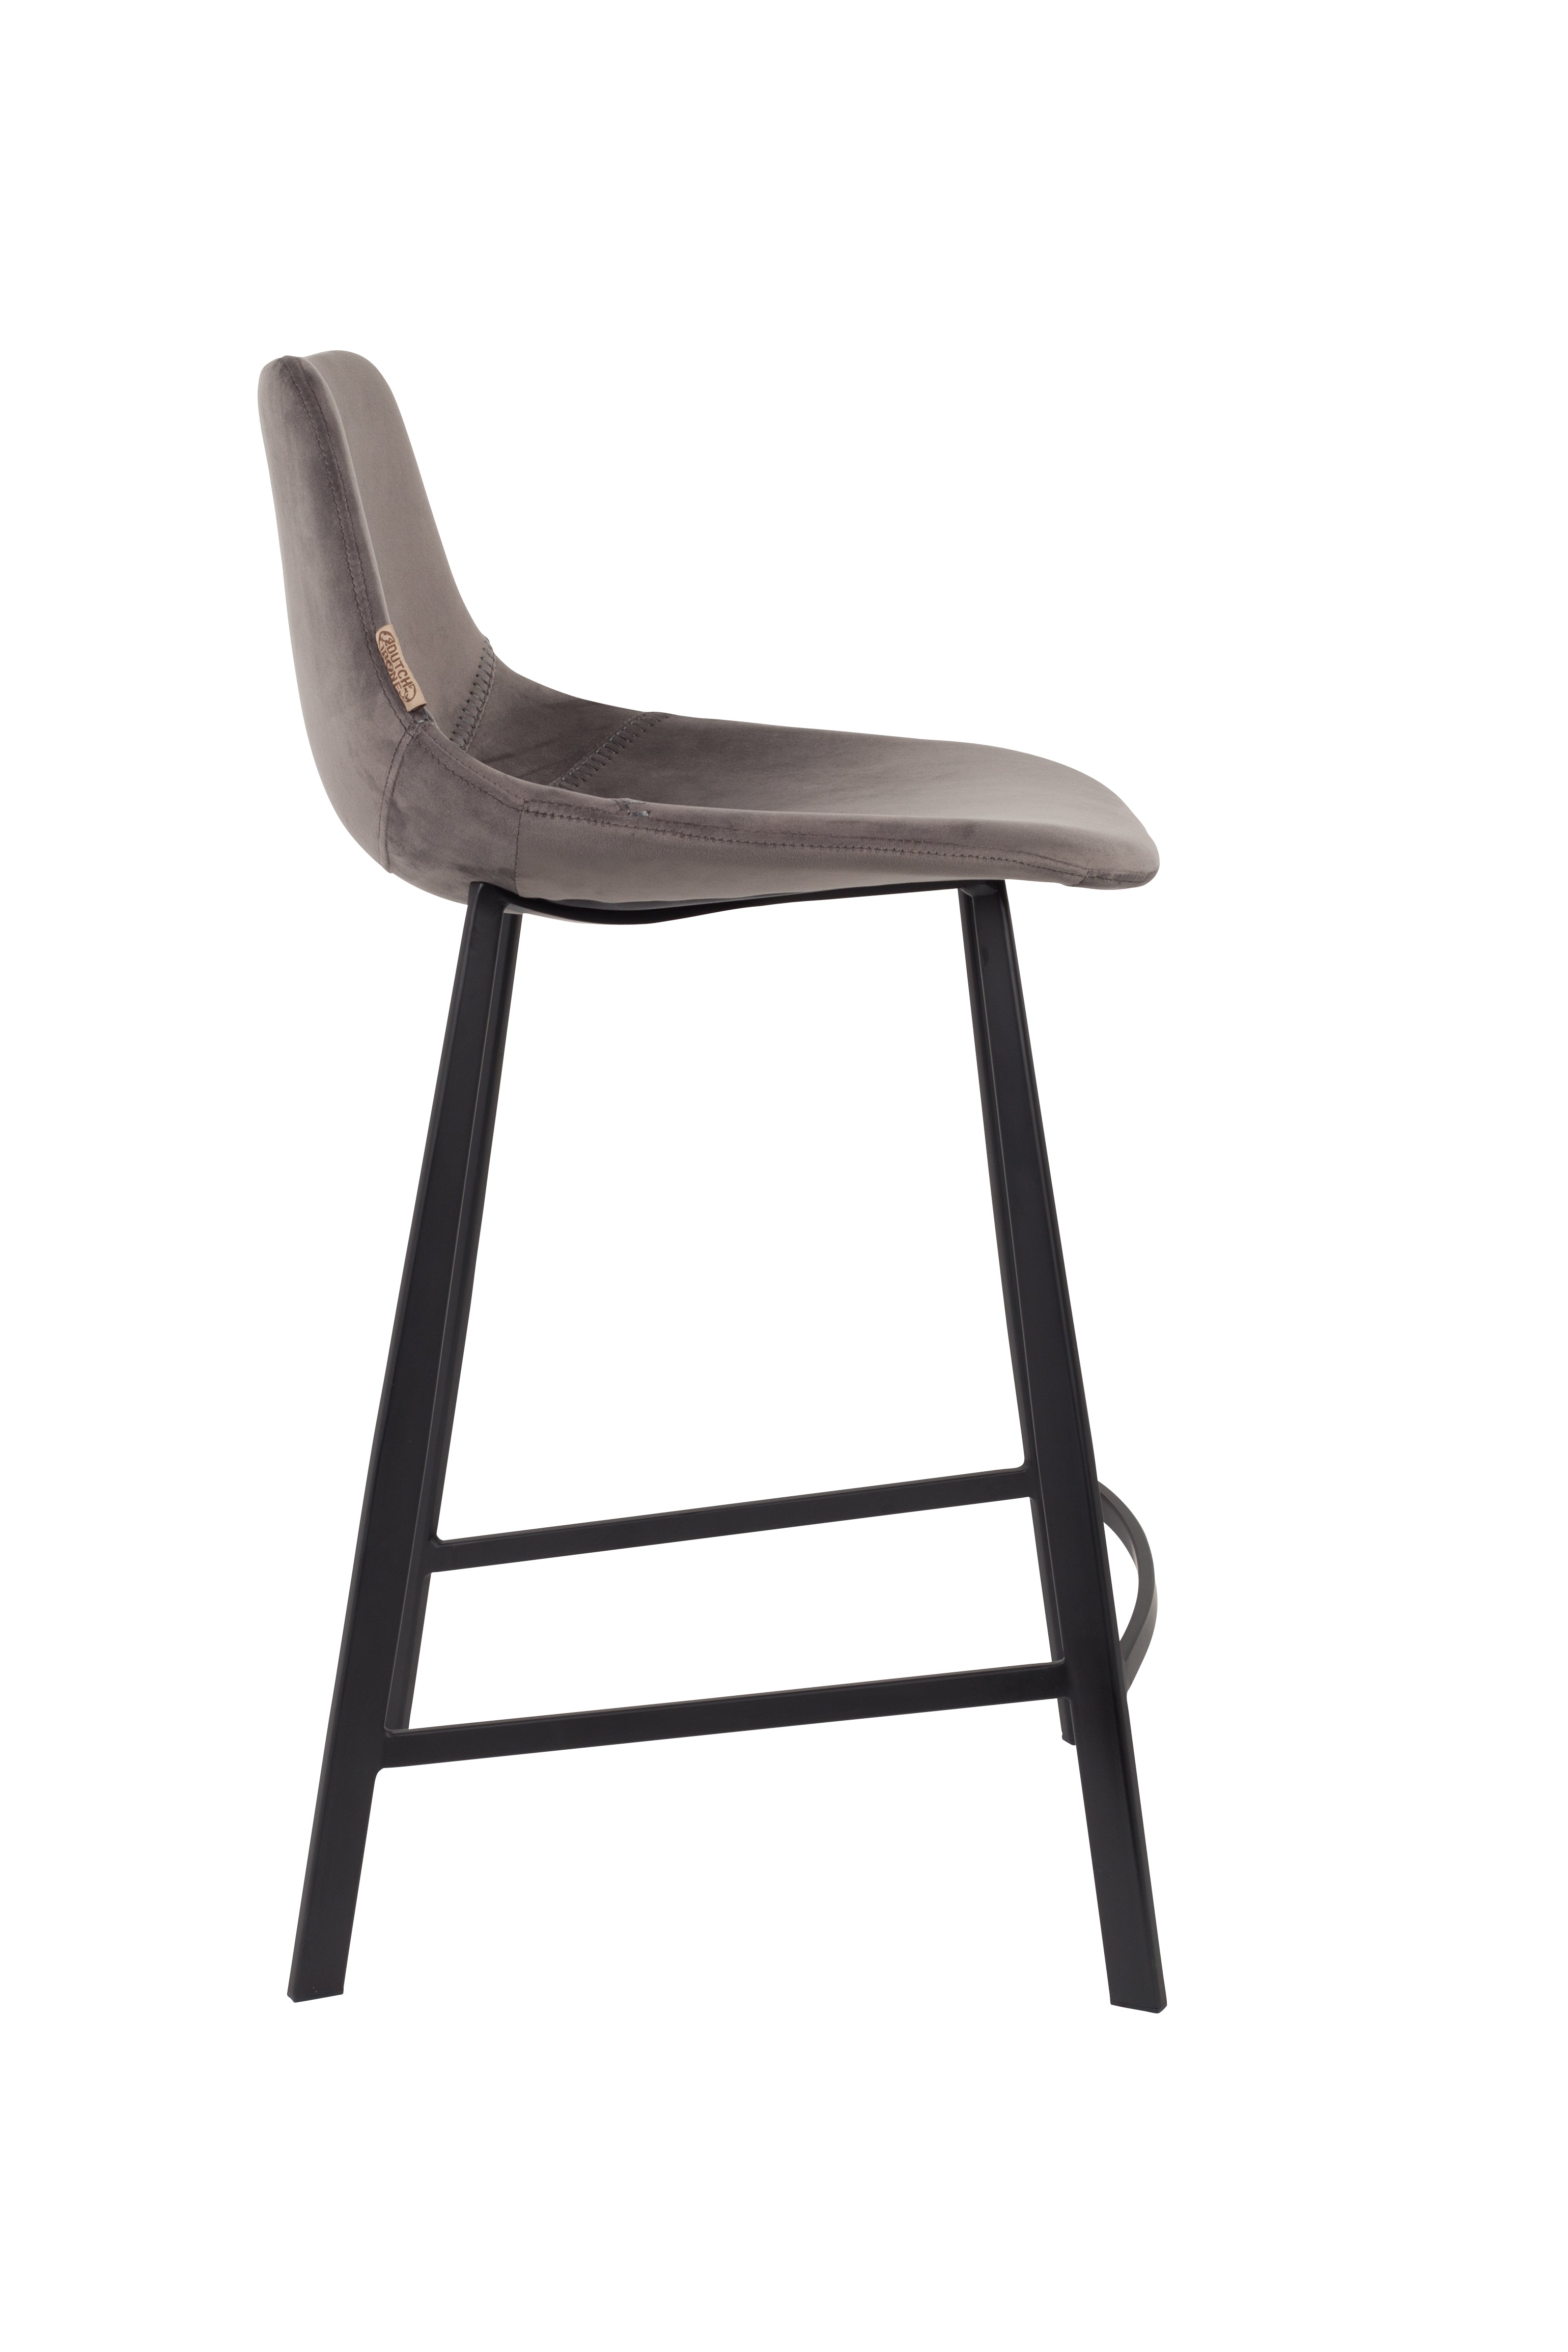 Bar stool franky velvet gray